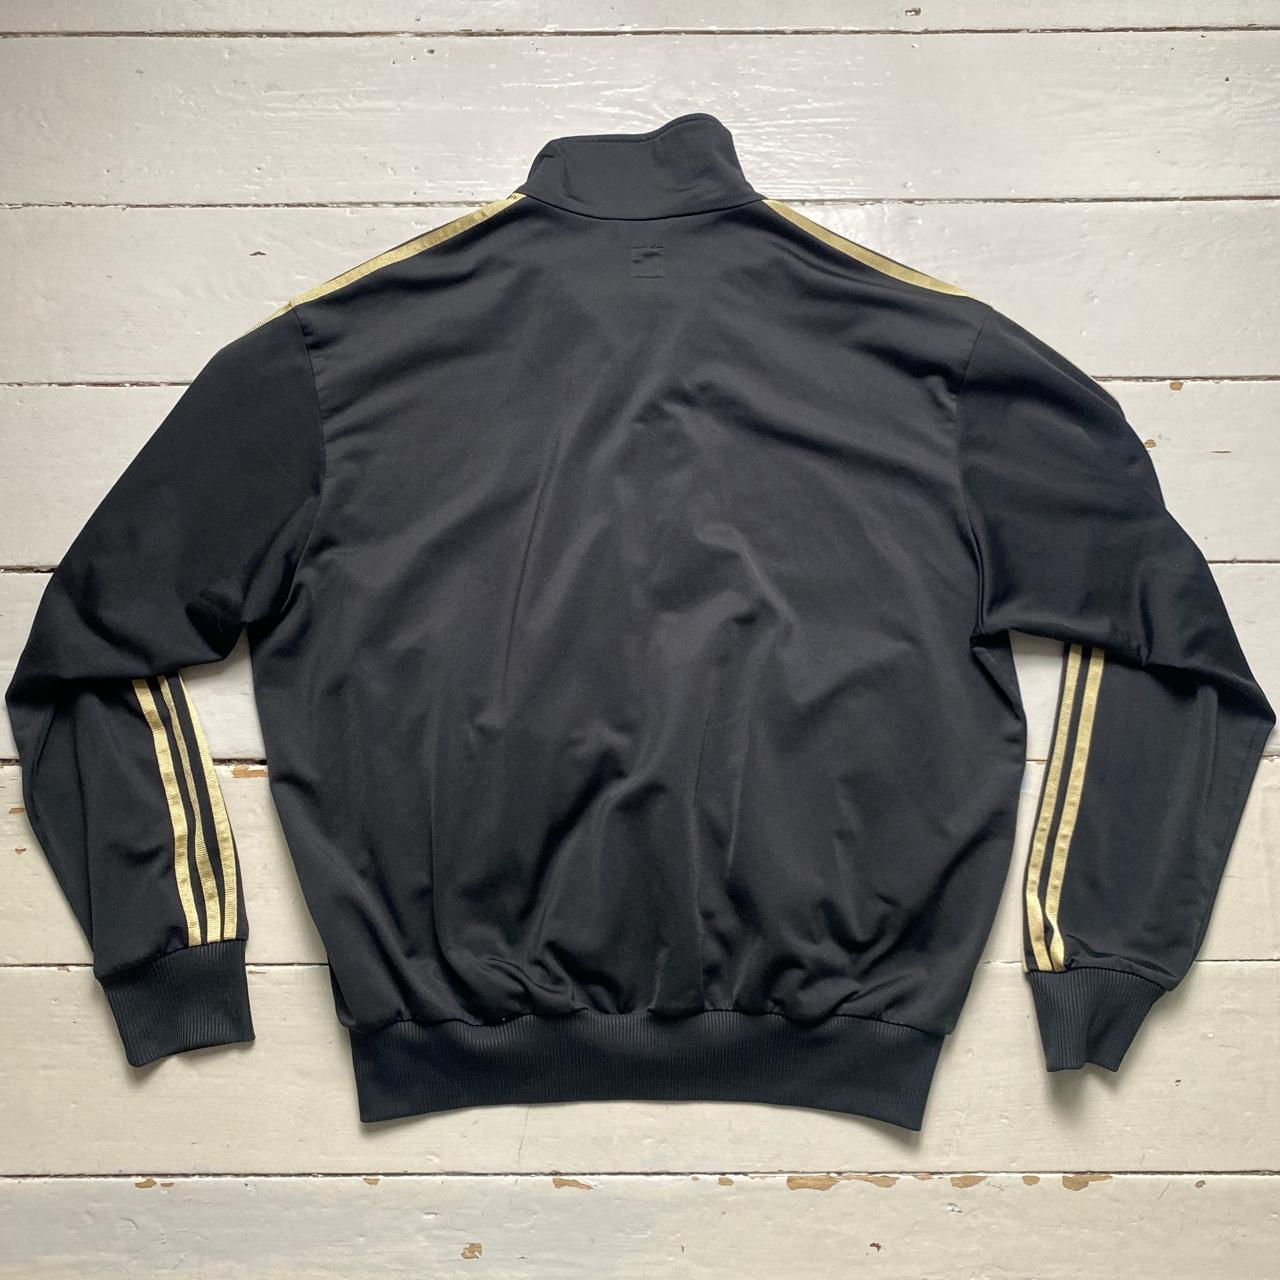 Adidas Originals Vintage Tracksuit Jacket Black Gold and Pink